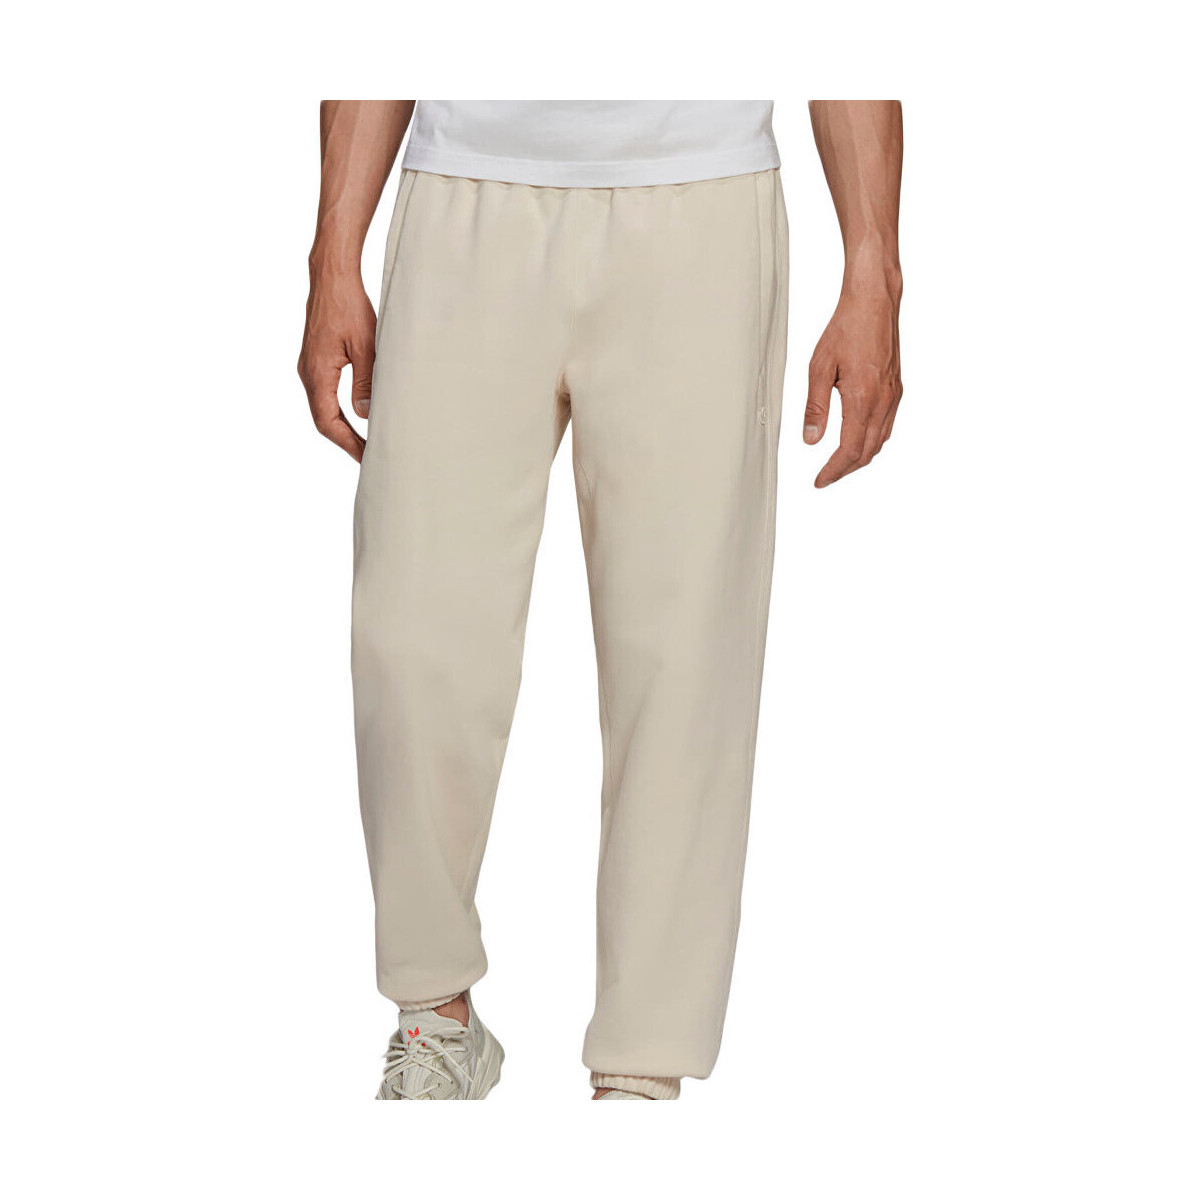 textil Hombre Pantalones de chándal adidas Originals  Blanco